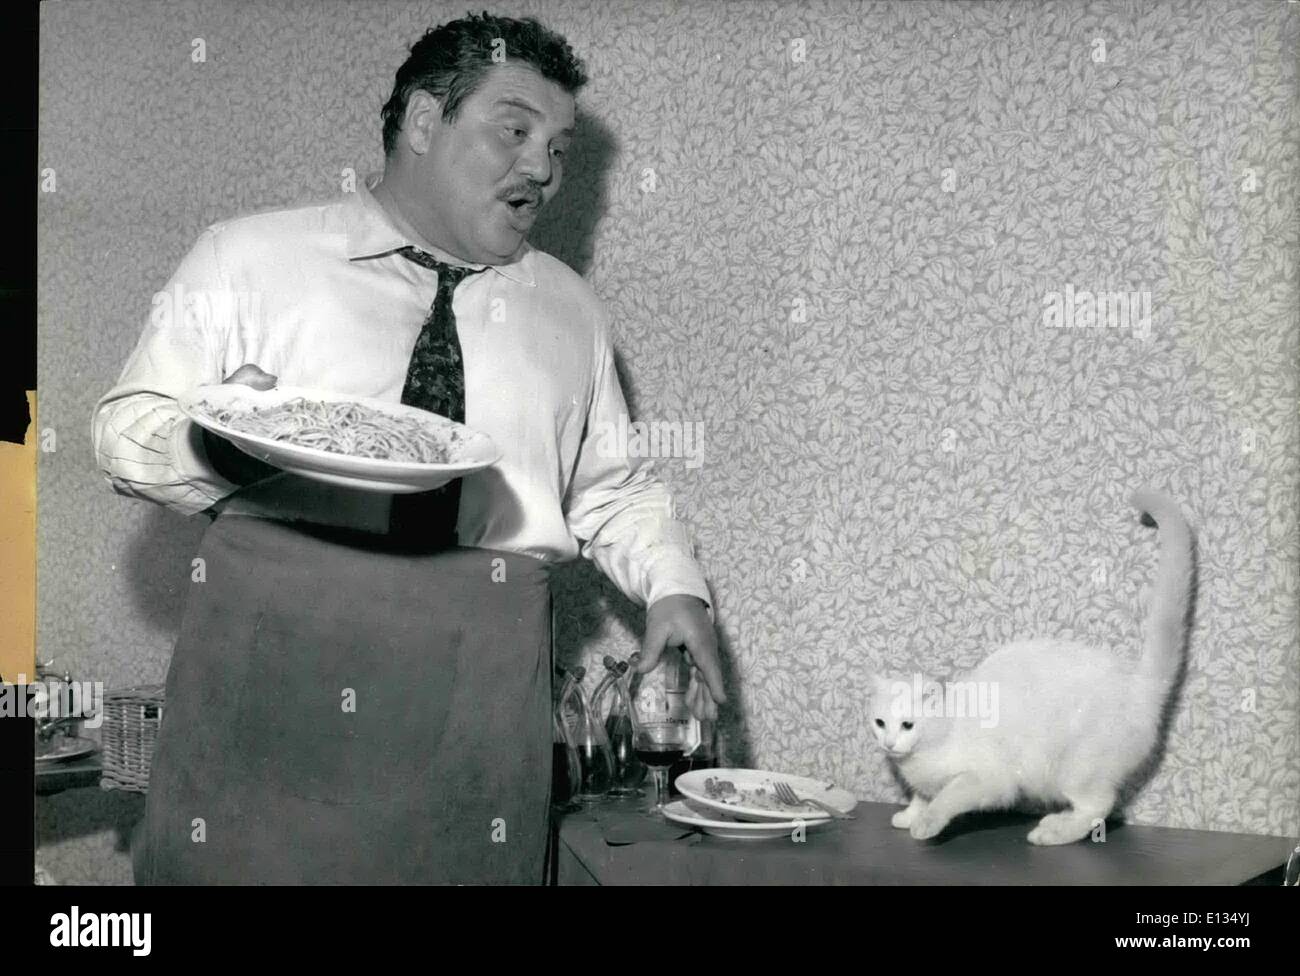 Febrero 28, 2012 - Espaguetis mi gran especialidad, dice Alco Lulli el famoso actor italiano, es uno de los personajes principales de ''La Nuit des Traques'' (Acorralado) ahora en la realización de un taller de París. OPS: un verdadero italiano Falco Lulli quien alega spaghetti es su gran especialidad ha cocinado un plato entre dos escenas, el estudio ha tenido un gato ayudando. Foto de stock